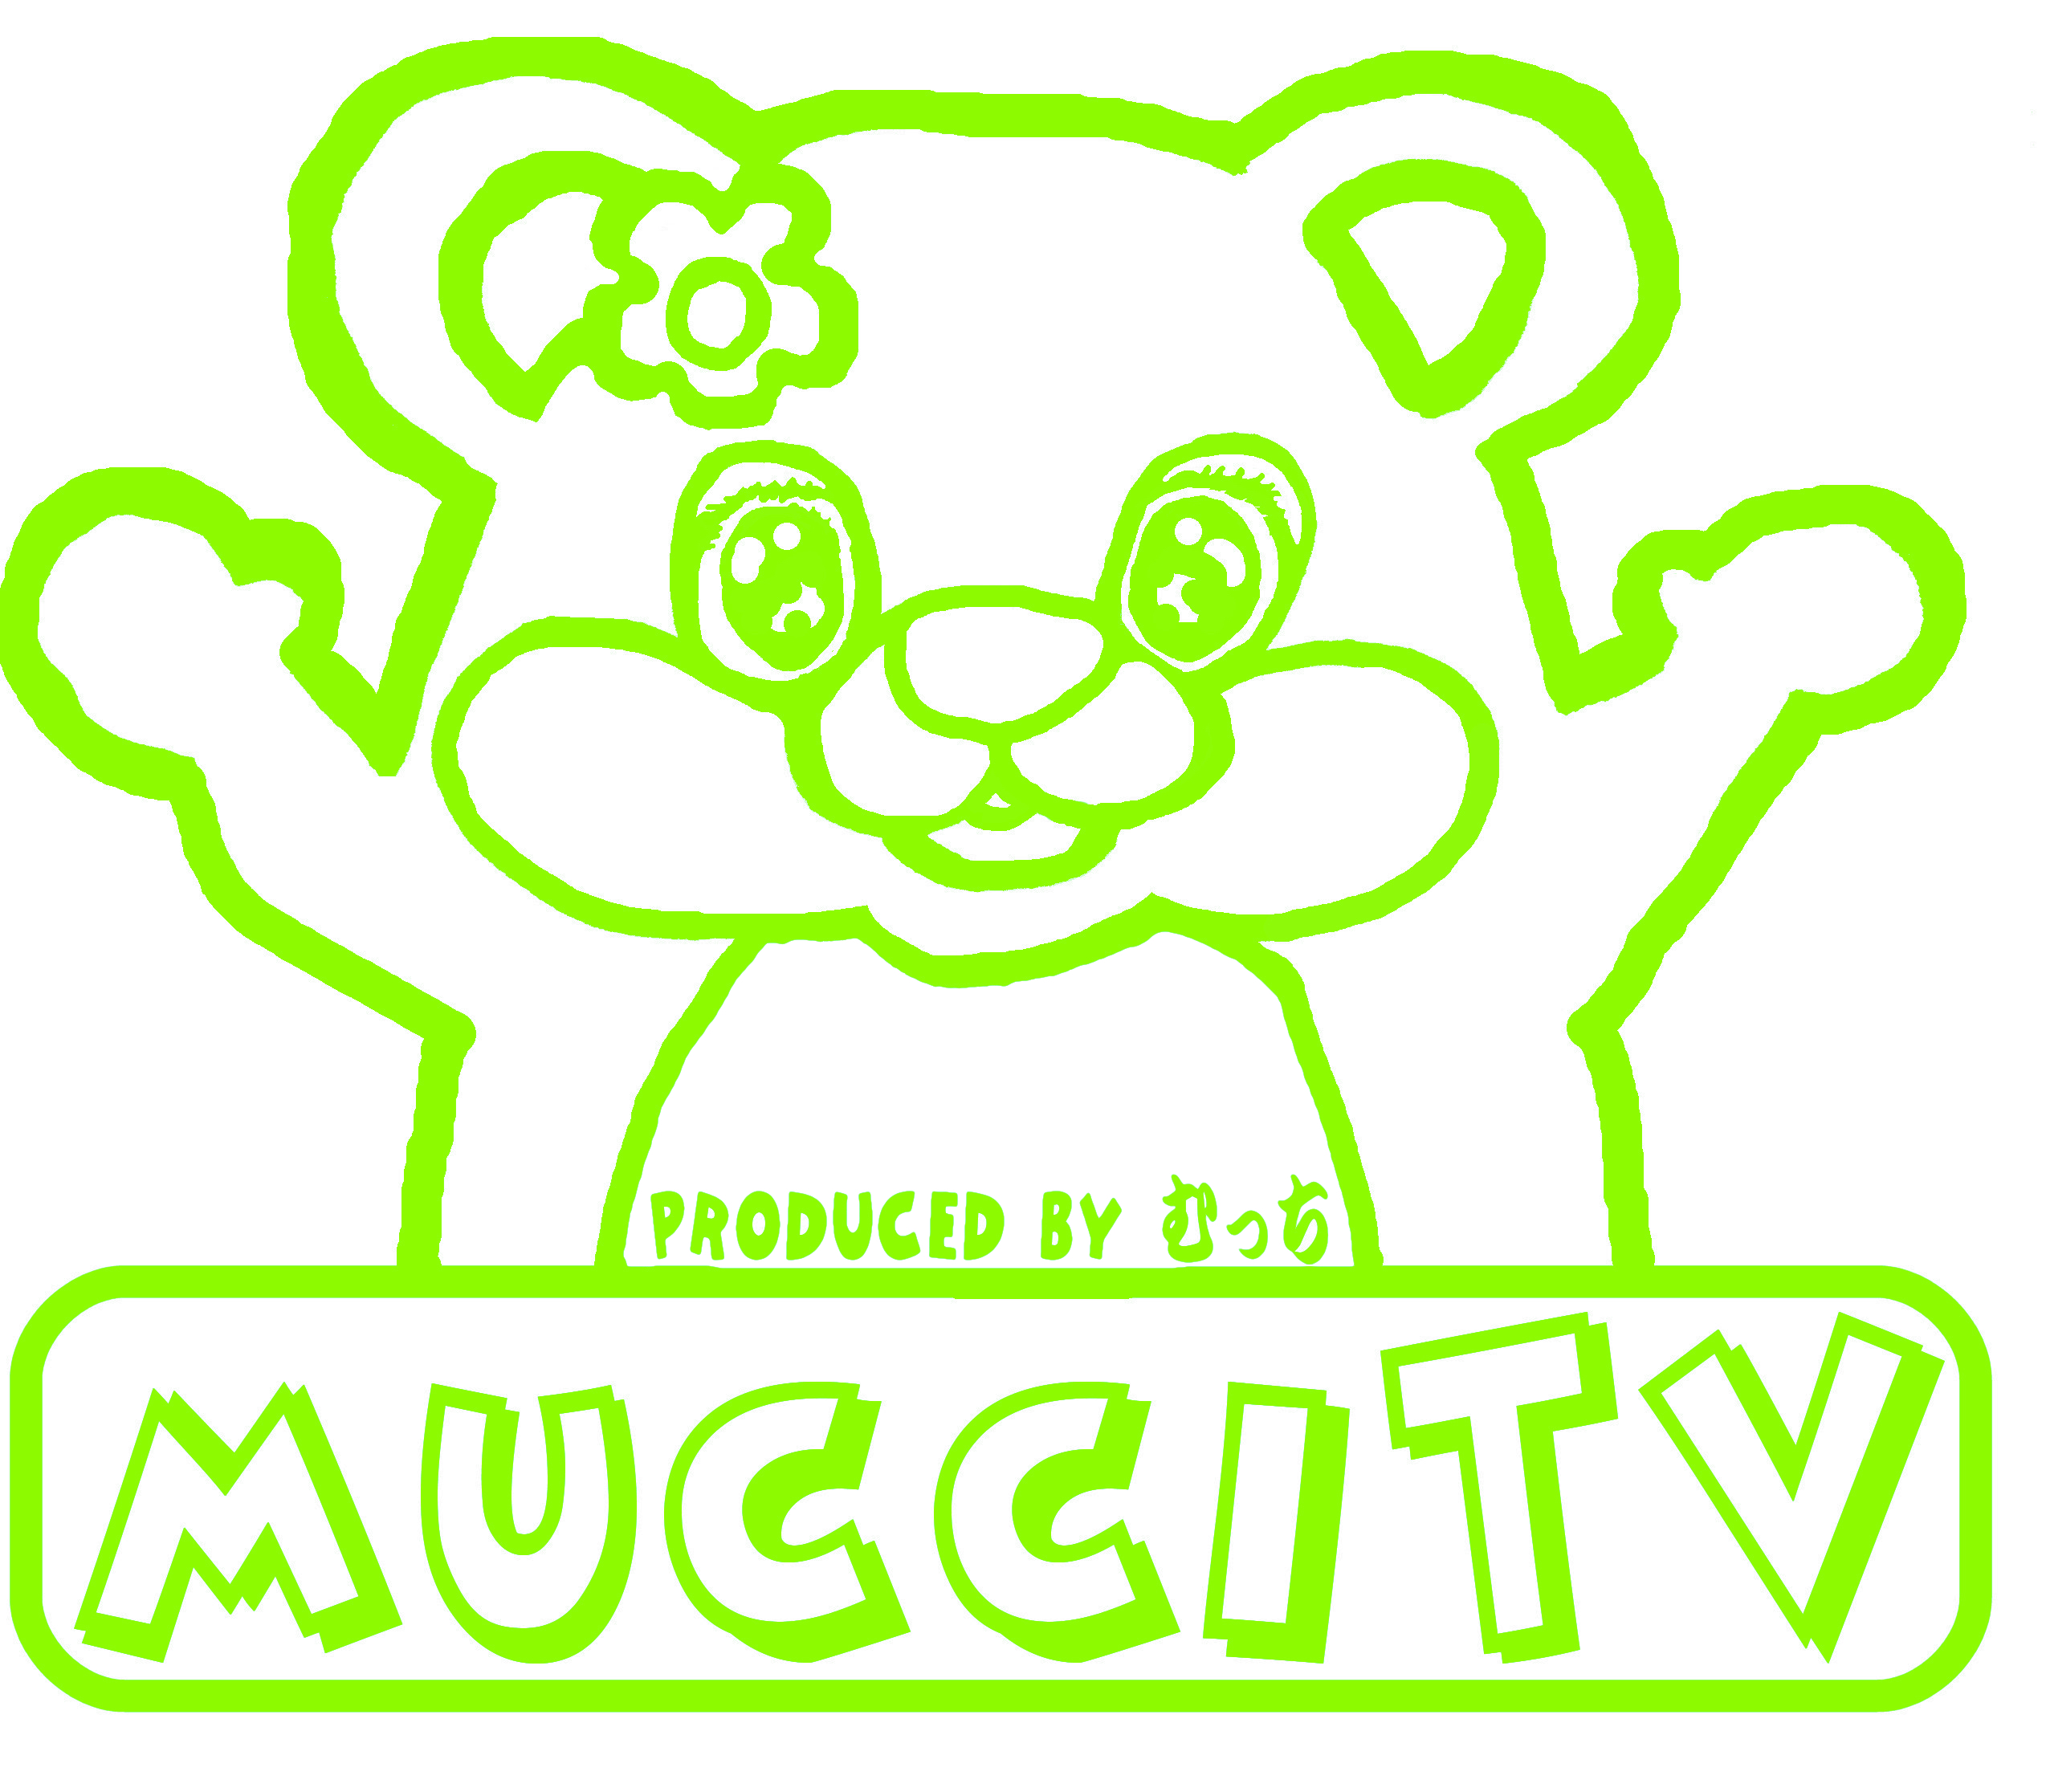 mucciTVデザインYouTubeチャンネルmucciTV内でmucciが着ているデザインと同じもの。